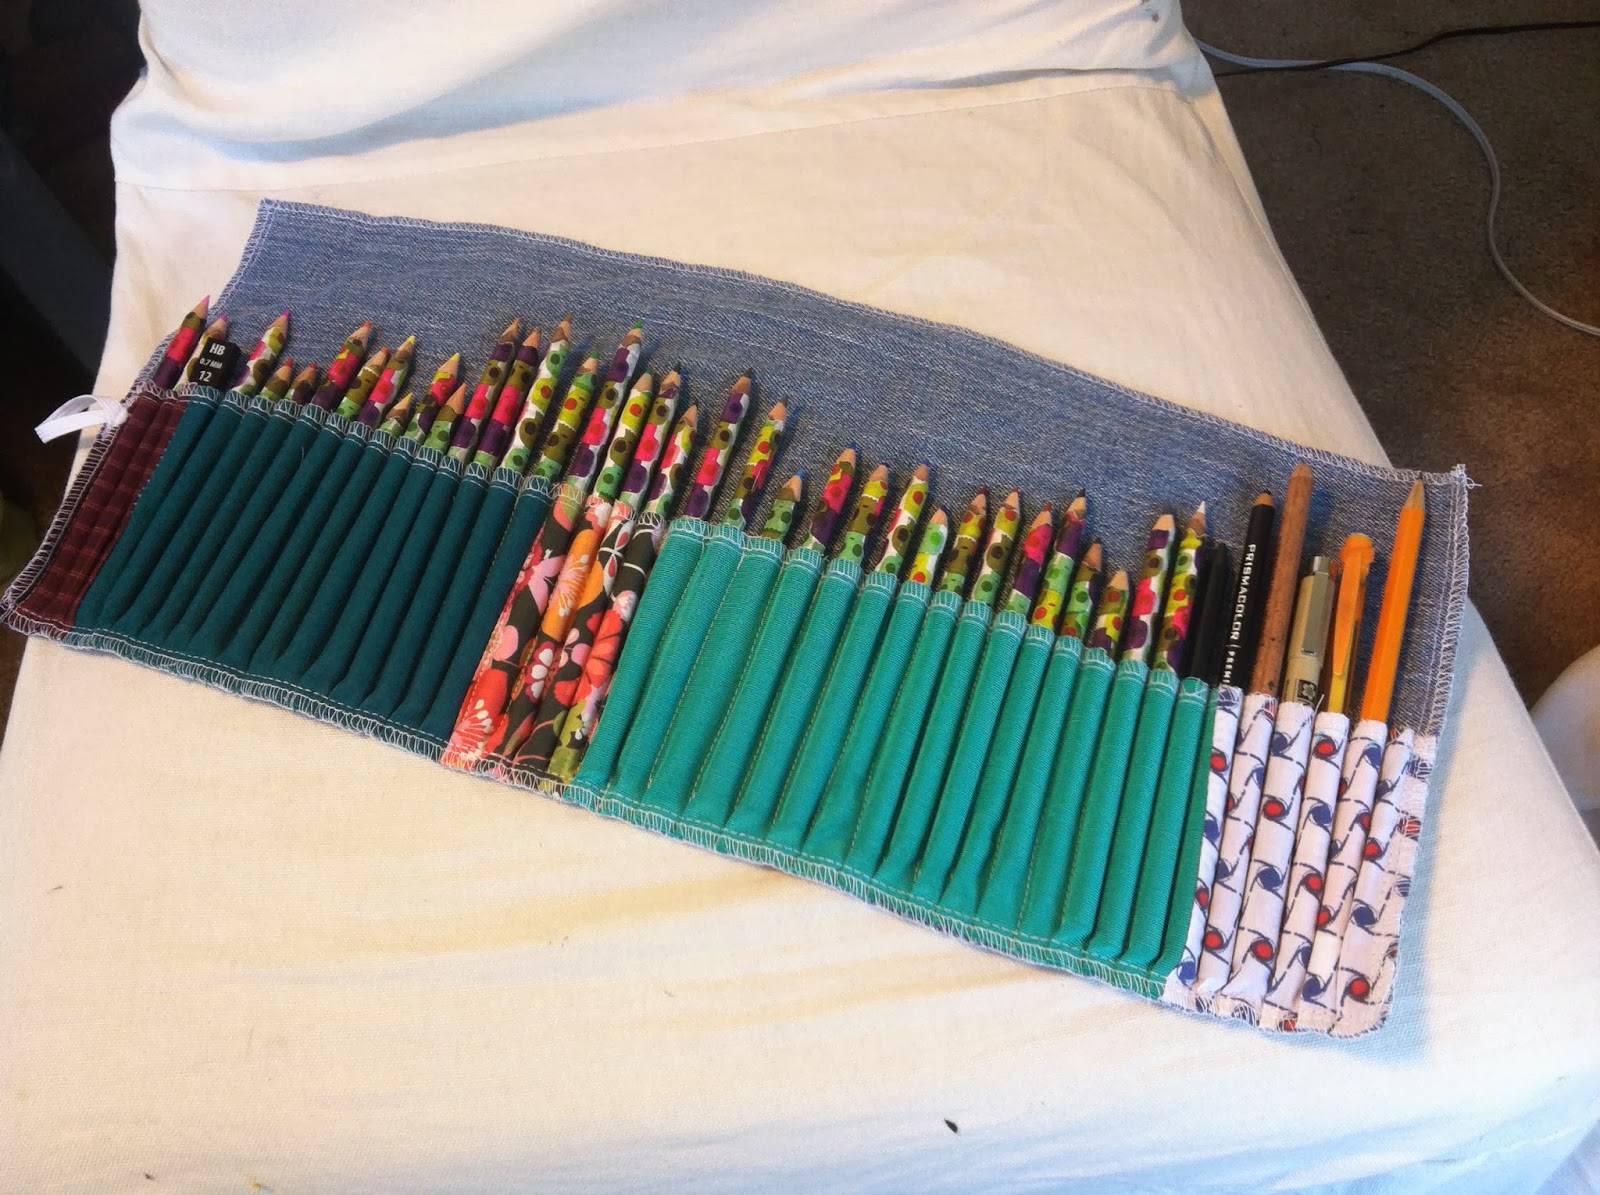 DIY Roll up Pencil case